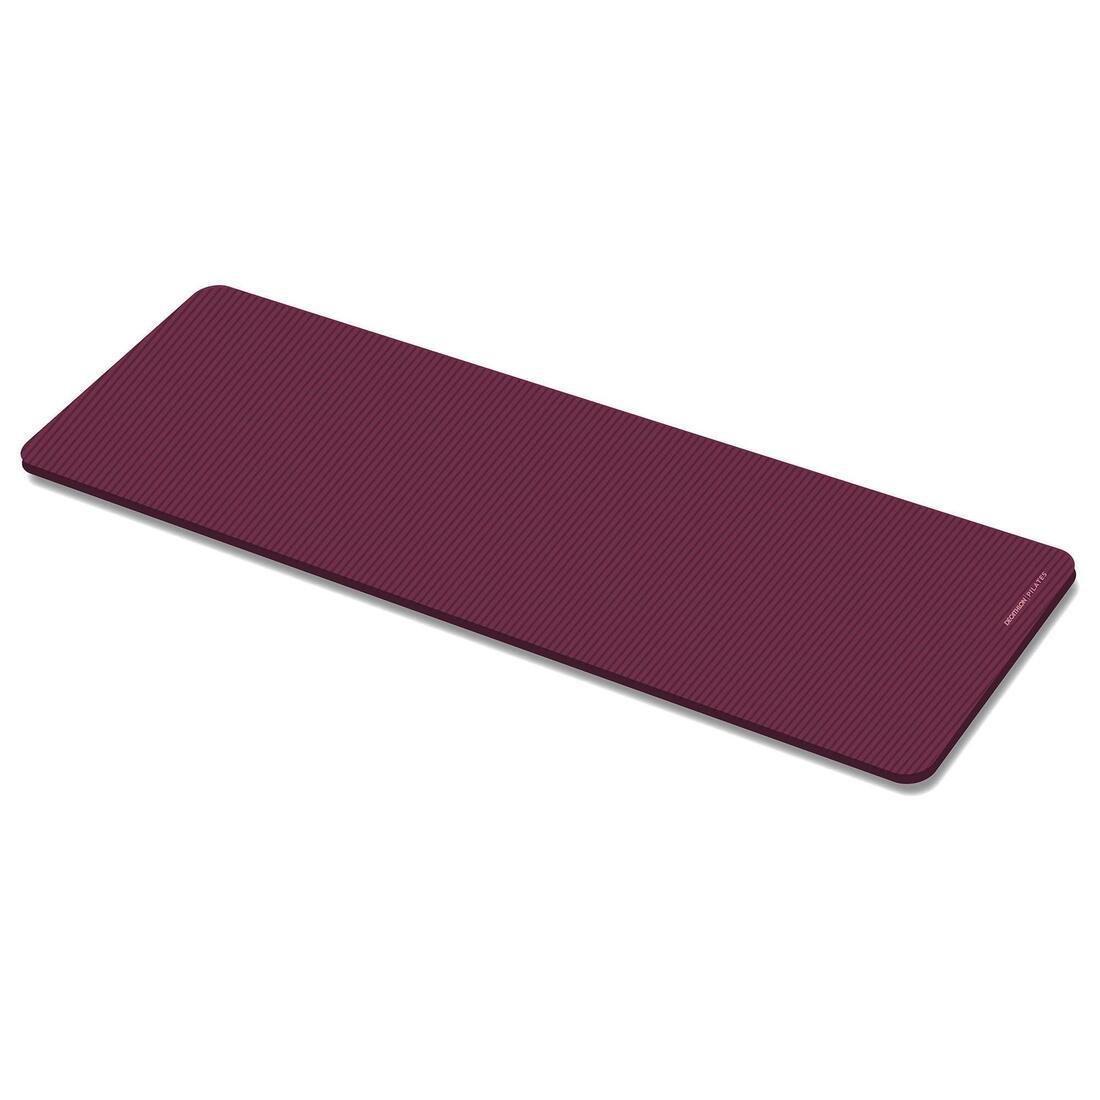 DOMYOS - Comfort Fitness Floor Mat, Charcoal Grey